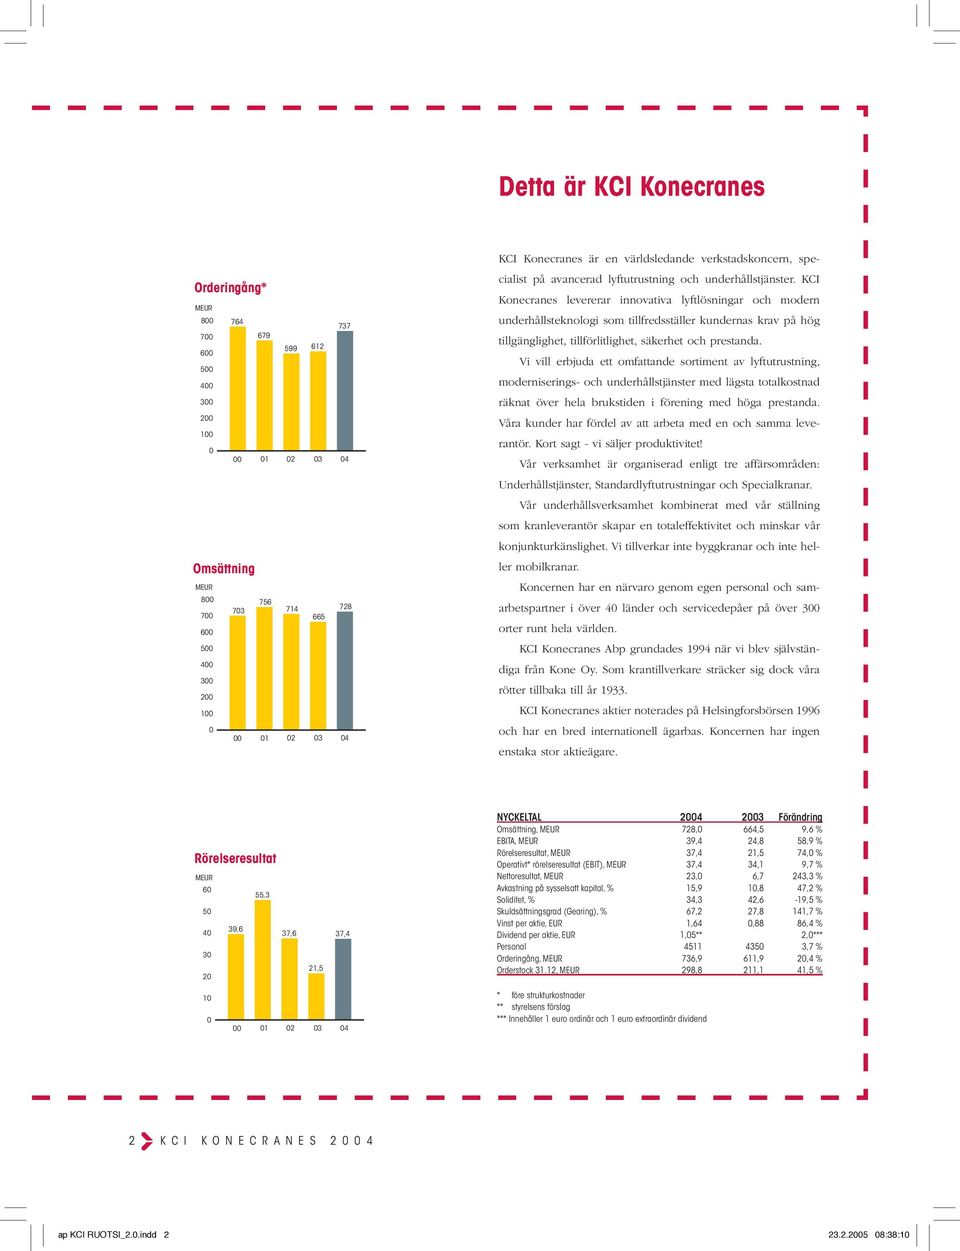 KCI Konecranes levererar innovativa lyftlösningar och modern underhållsteknologi som tillfredsställer kundernas krav på hög tillgänglighet, tillförlitlighet, säkerhet och prestanda.